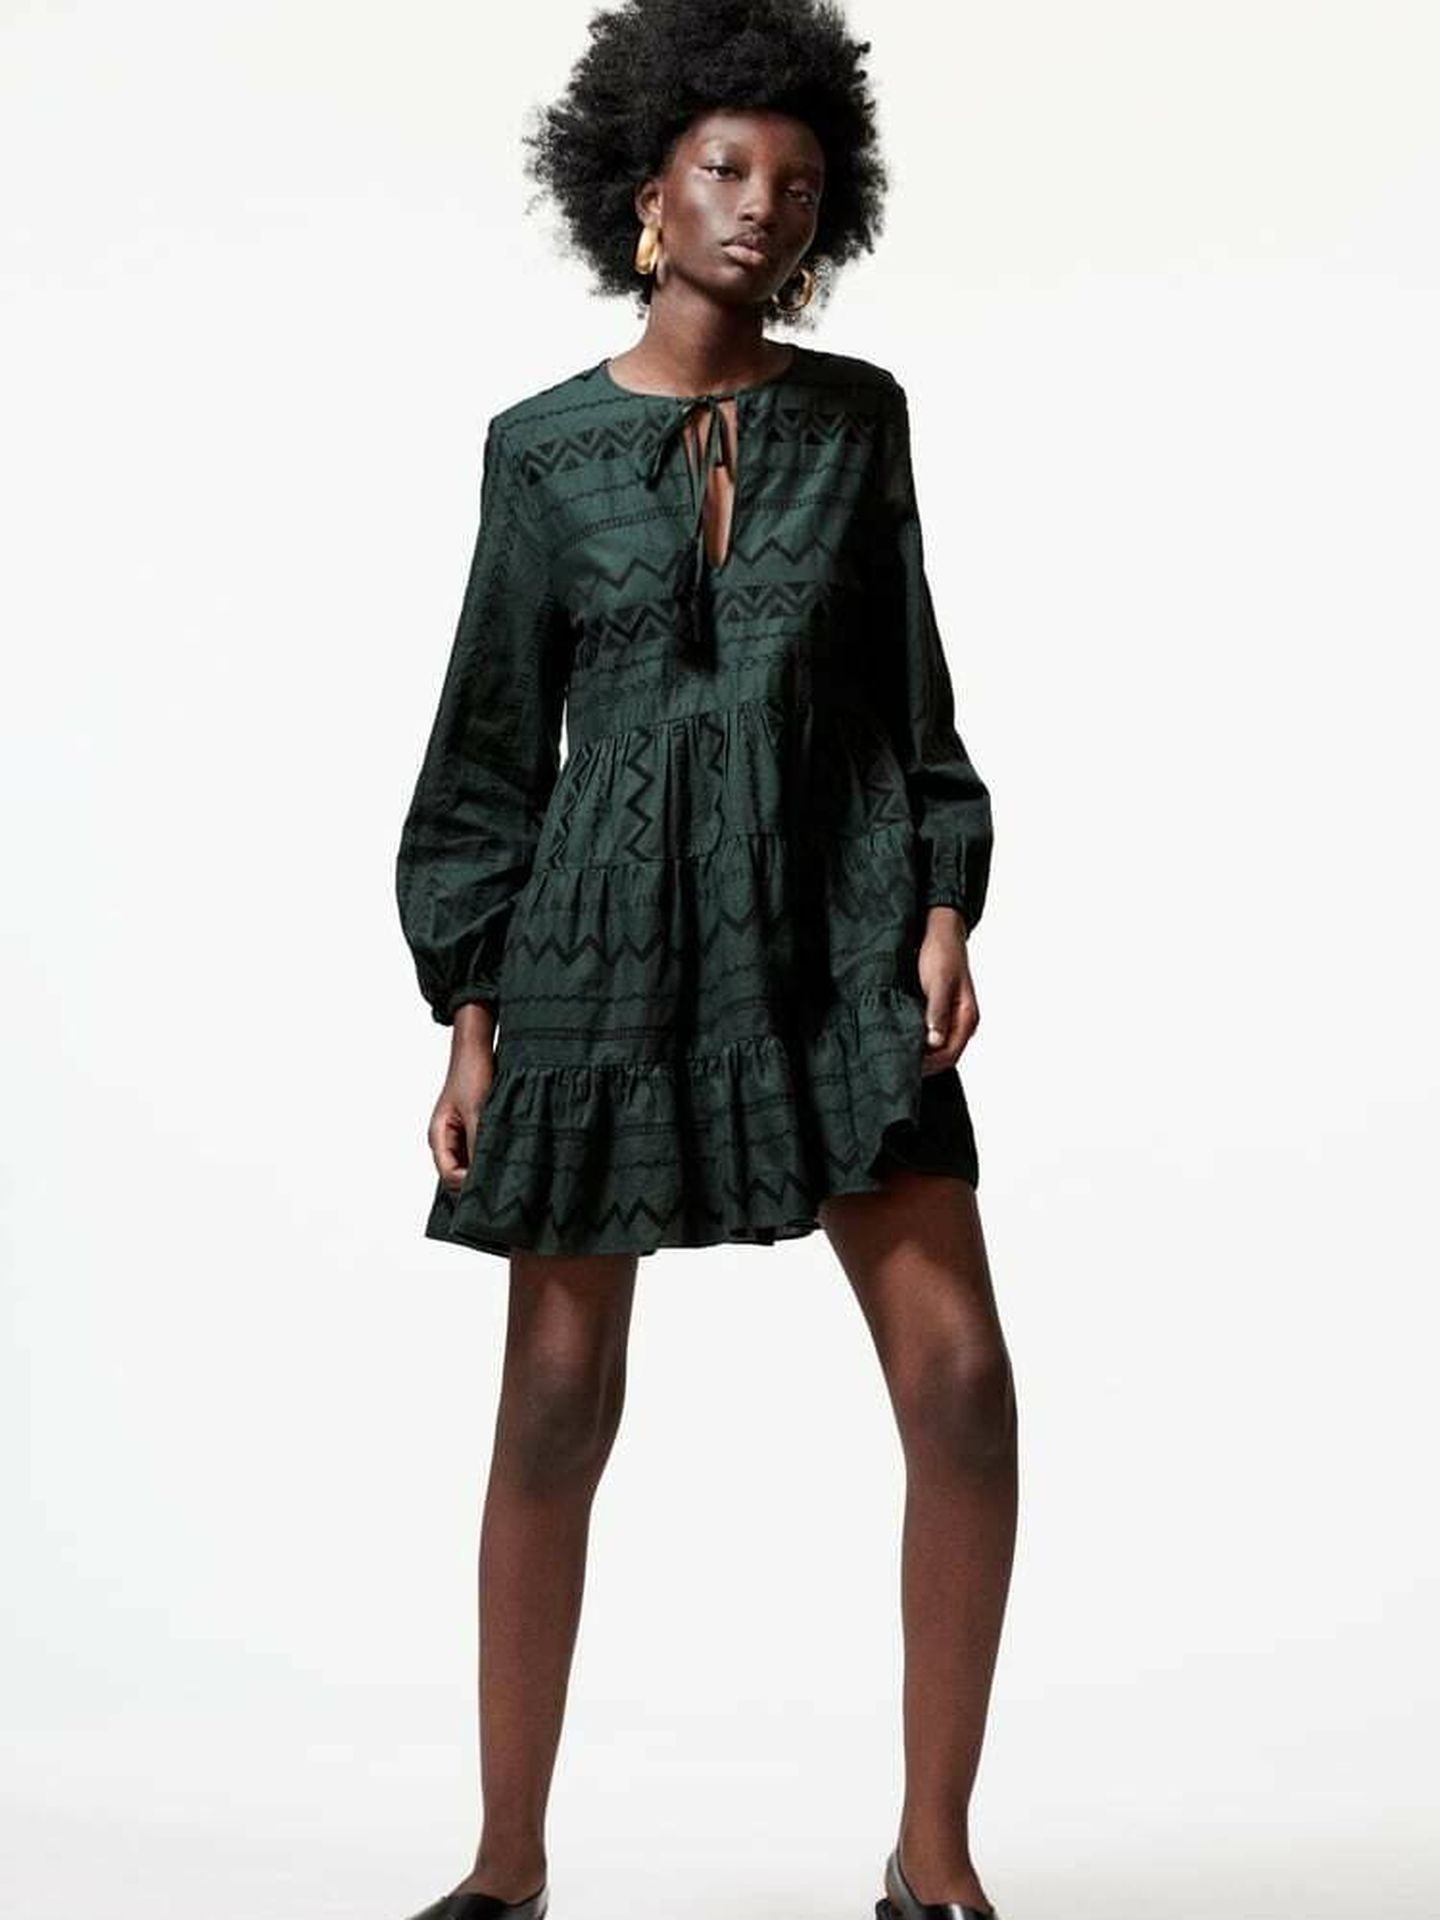 Ups Digital Oh El vestido corto de Zara que están comprando las estilistas